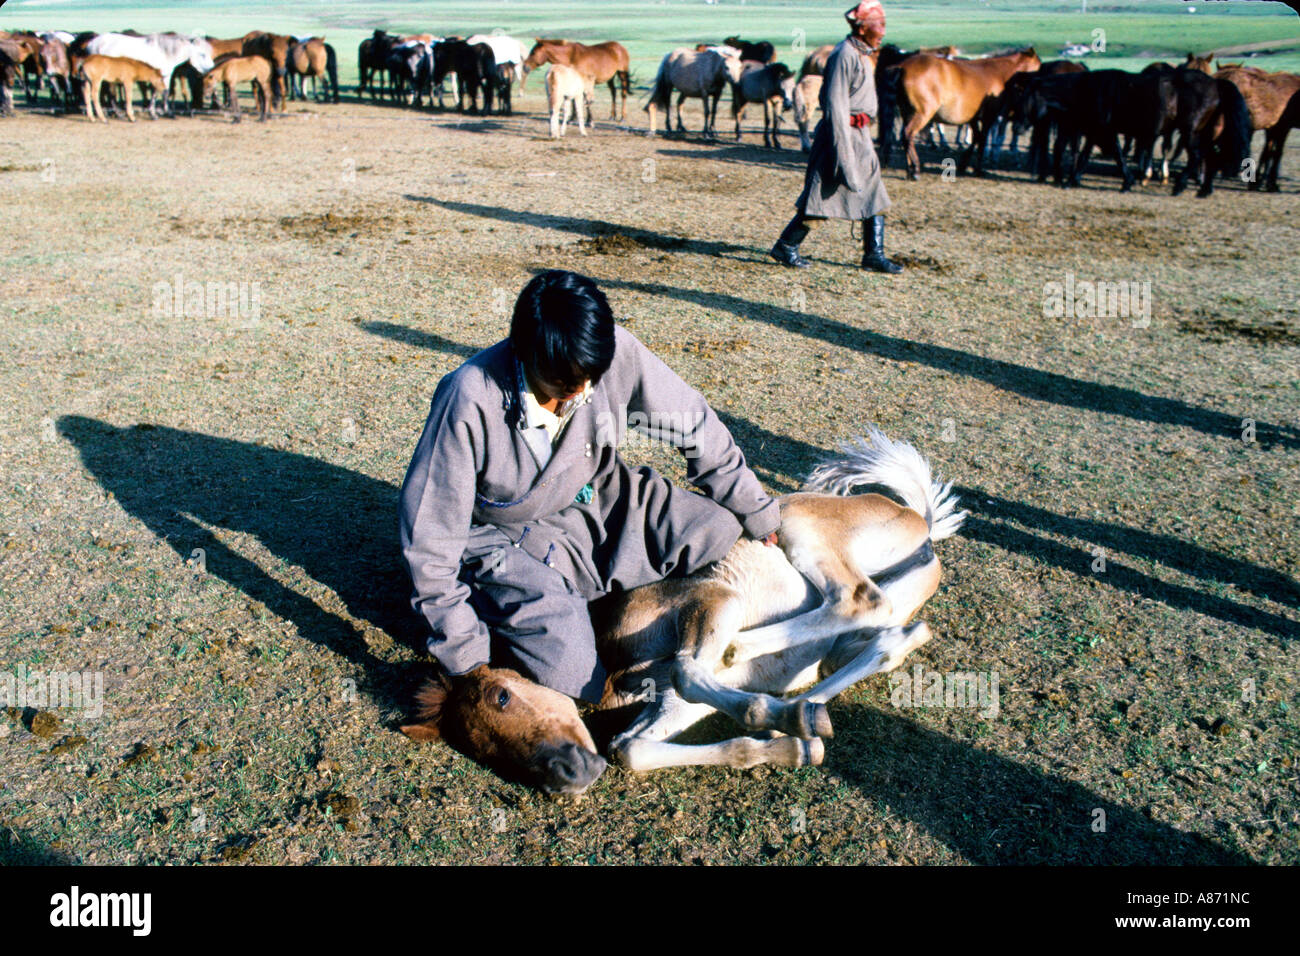 La Mongolie séparant les poulains de mares les poulains sont pris et lié Bulgan province Banque D'Images